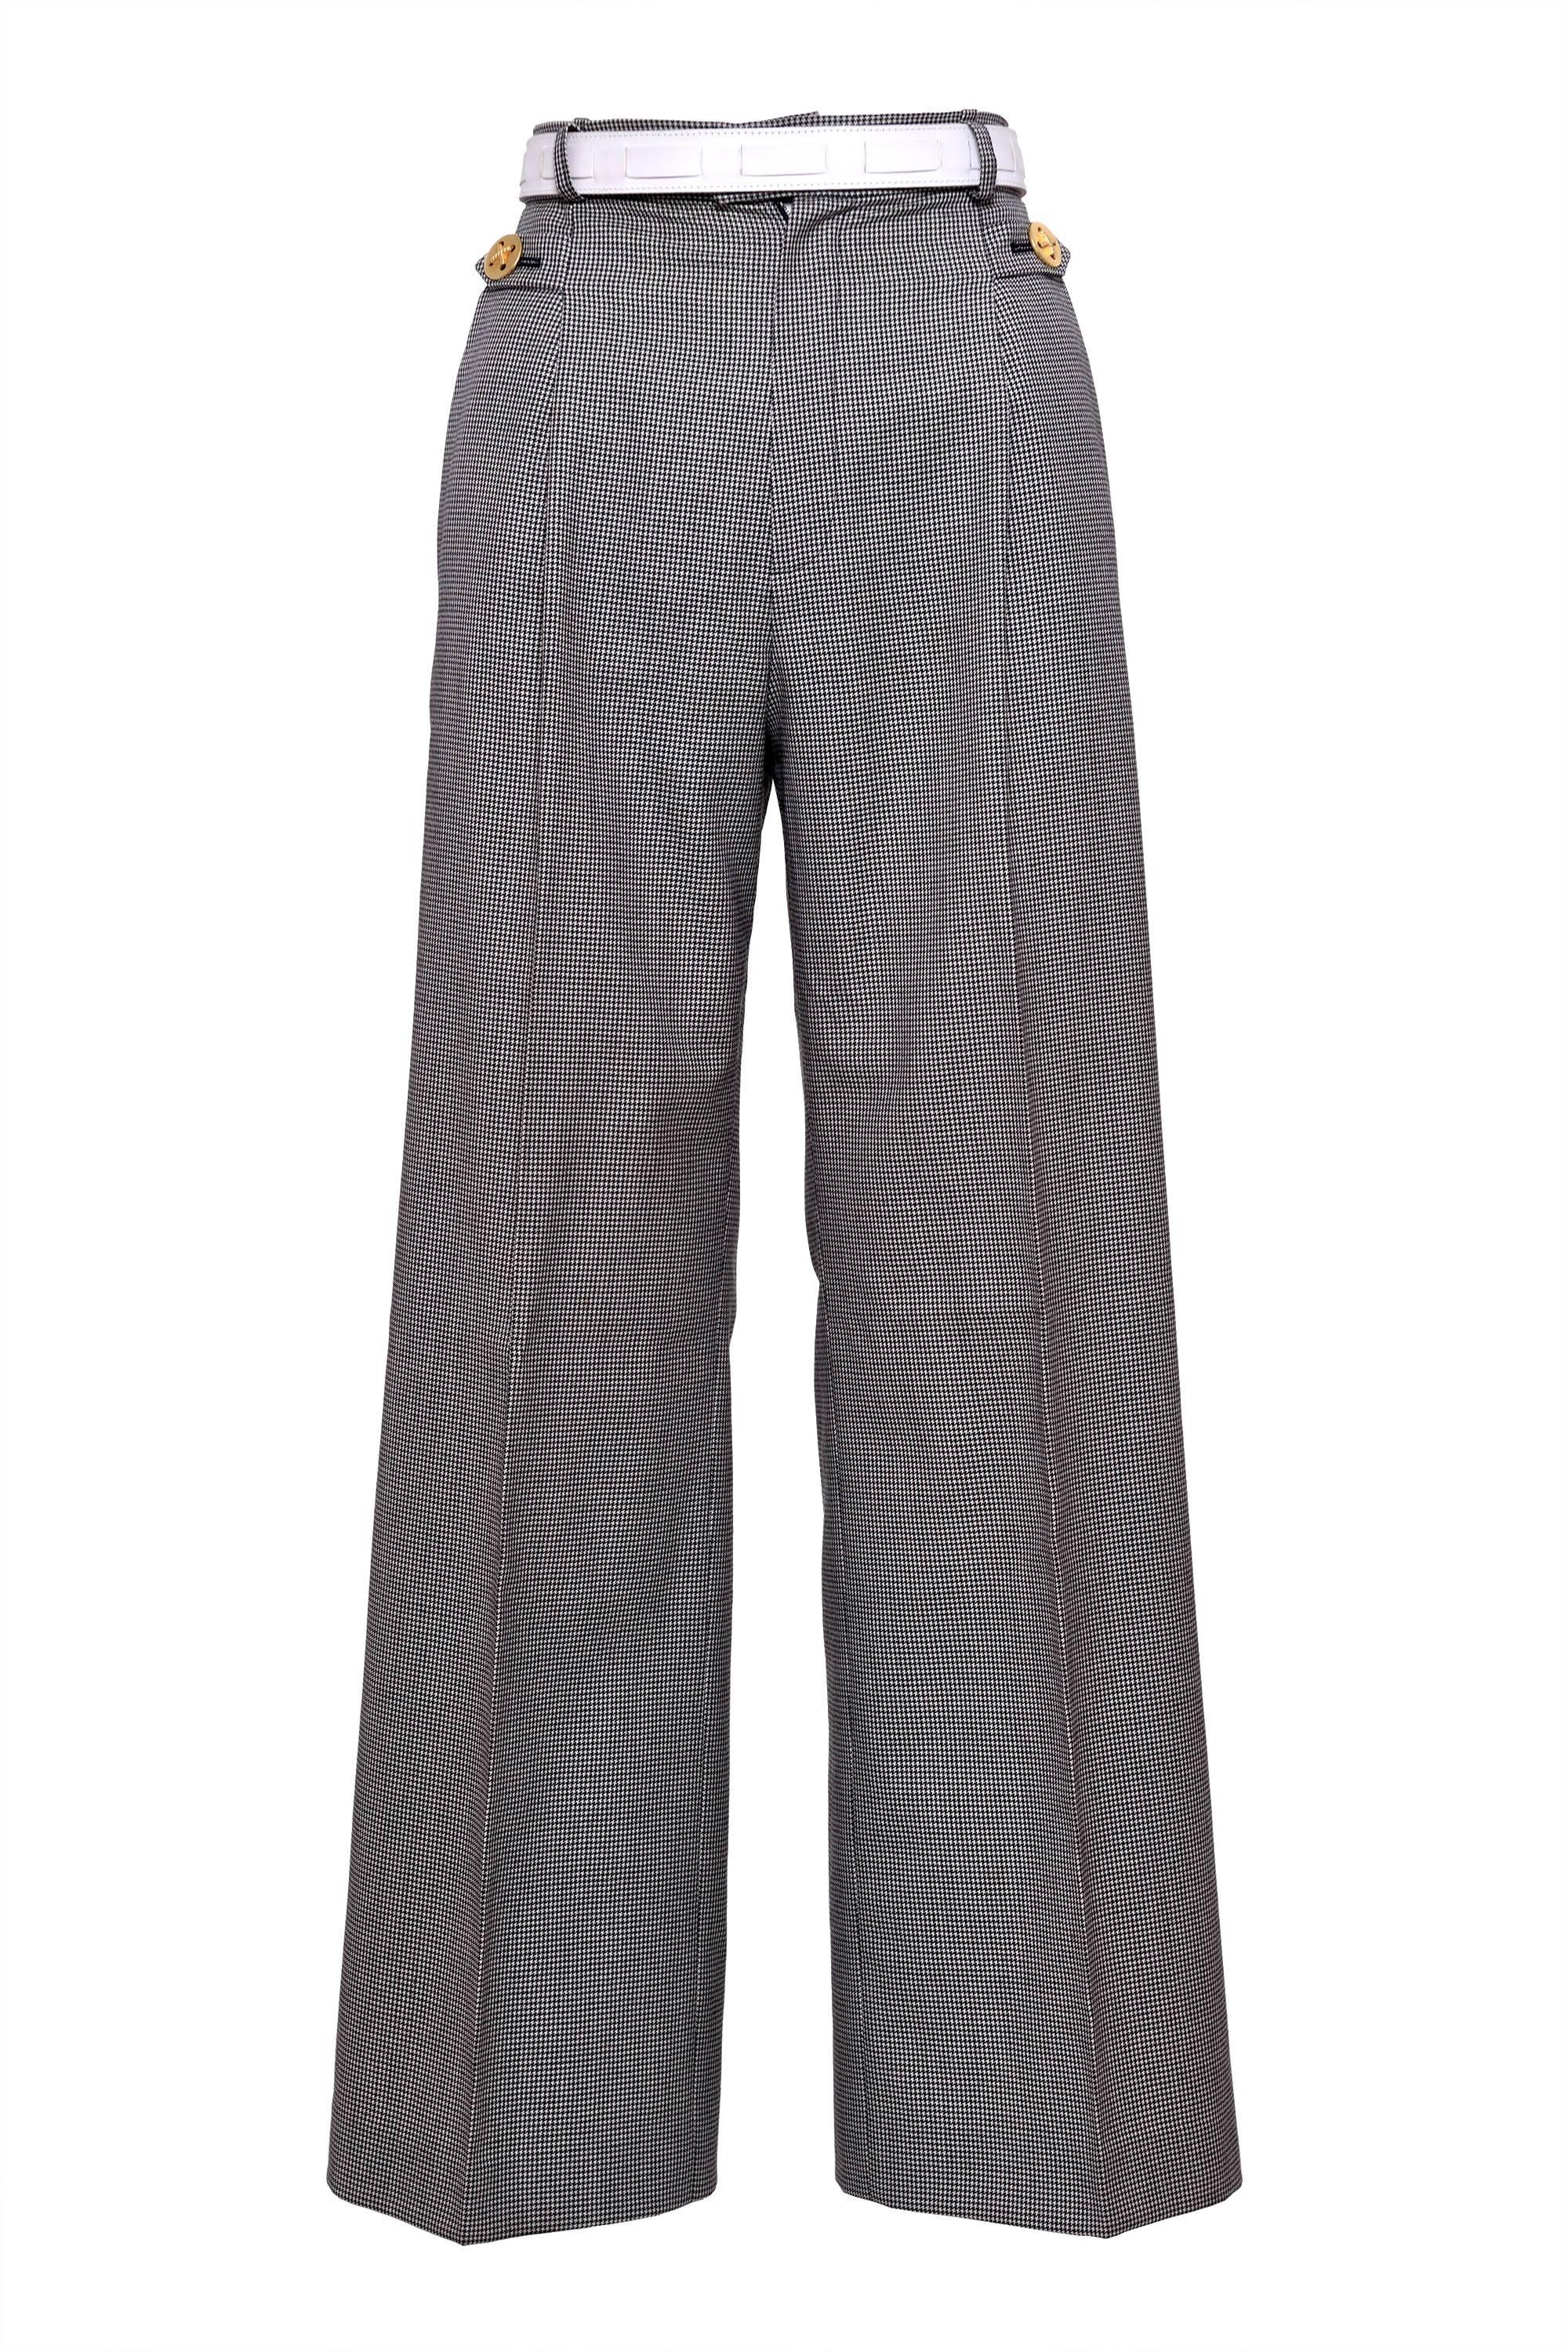 Gray 1980s YVES SAINT LAURENT Rive Gauche Pied De Poule Cotton Suit Pants  For Sale